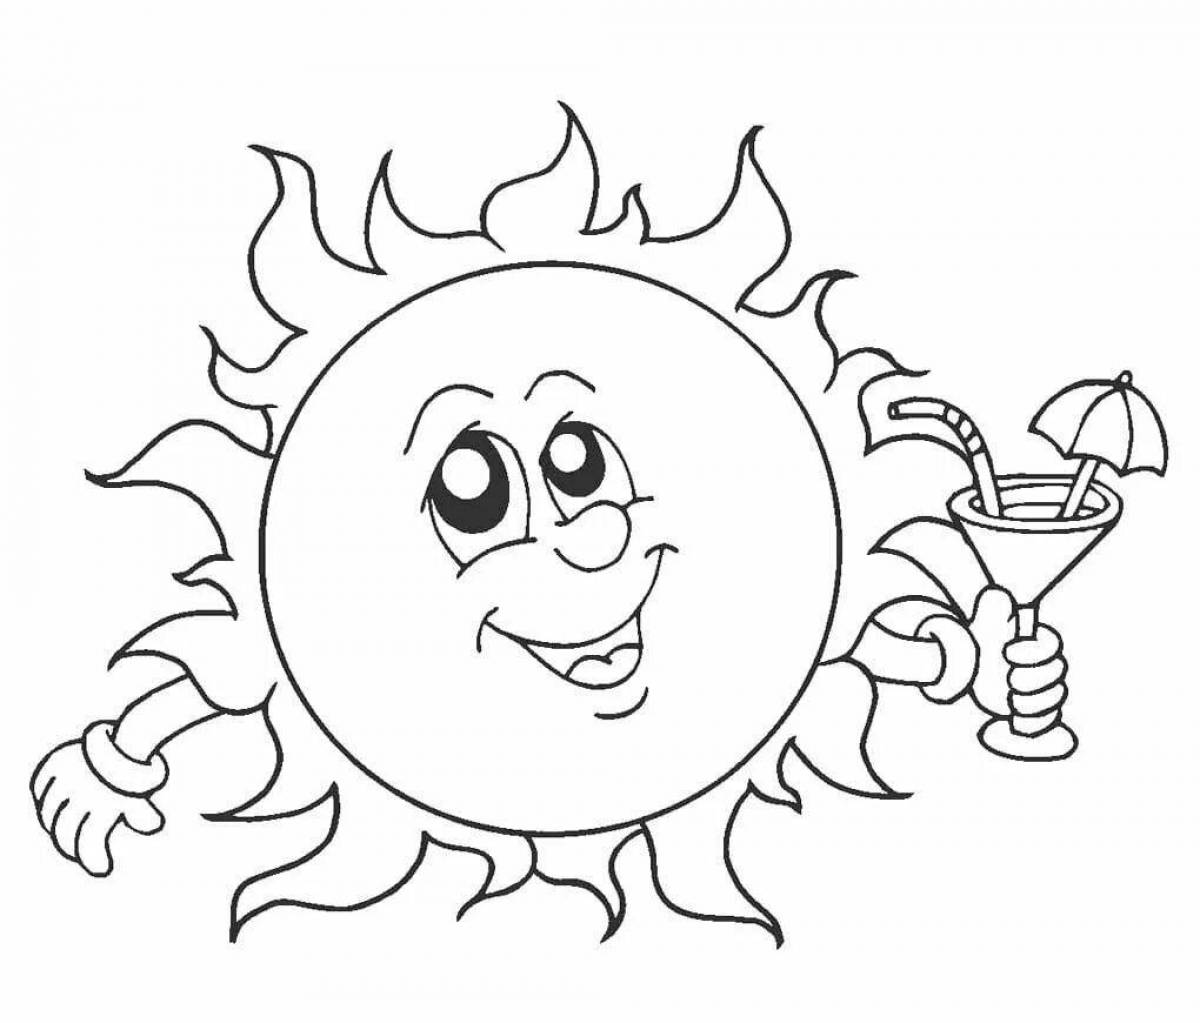 Fun coloring book sun for kids